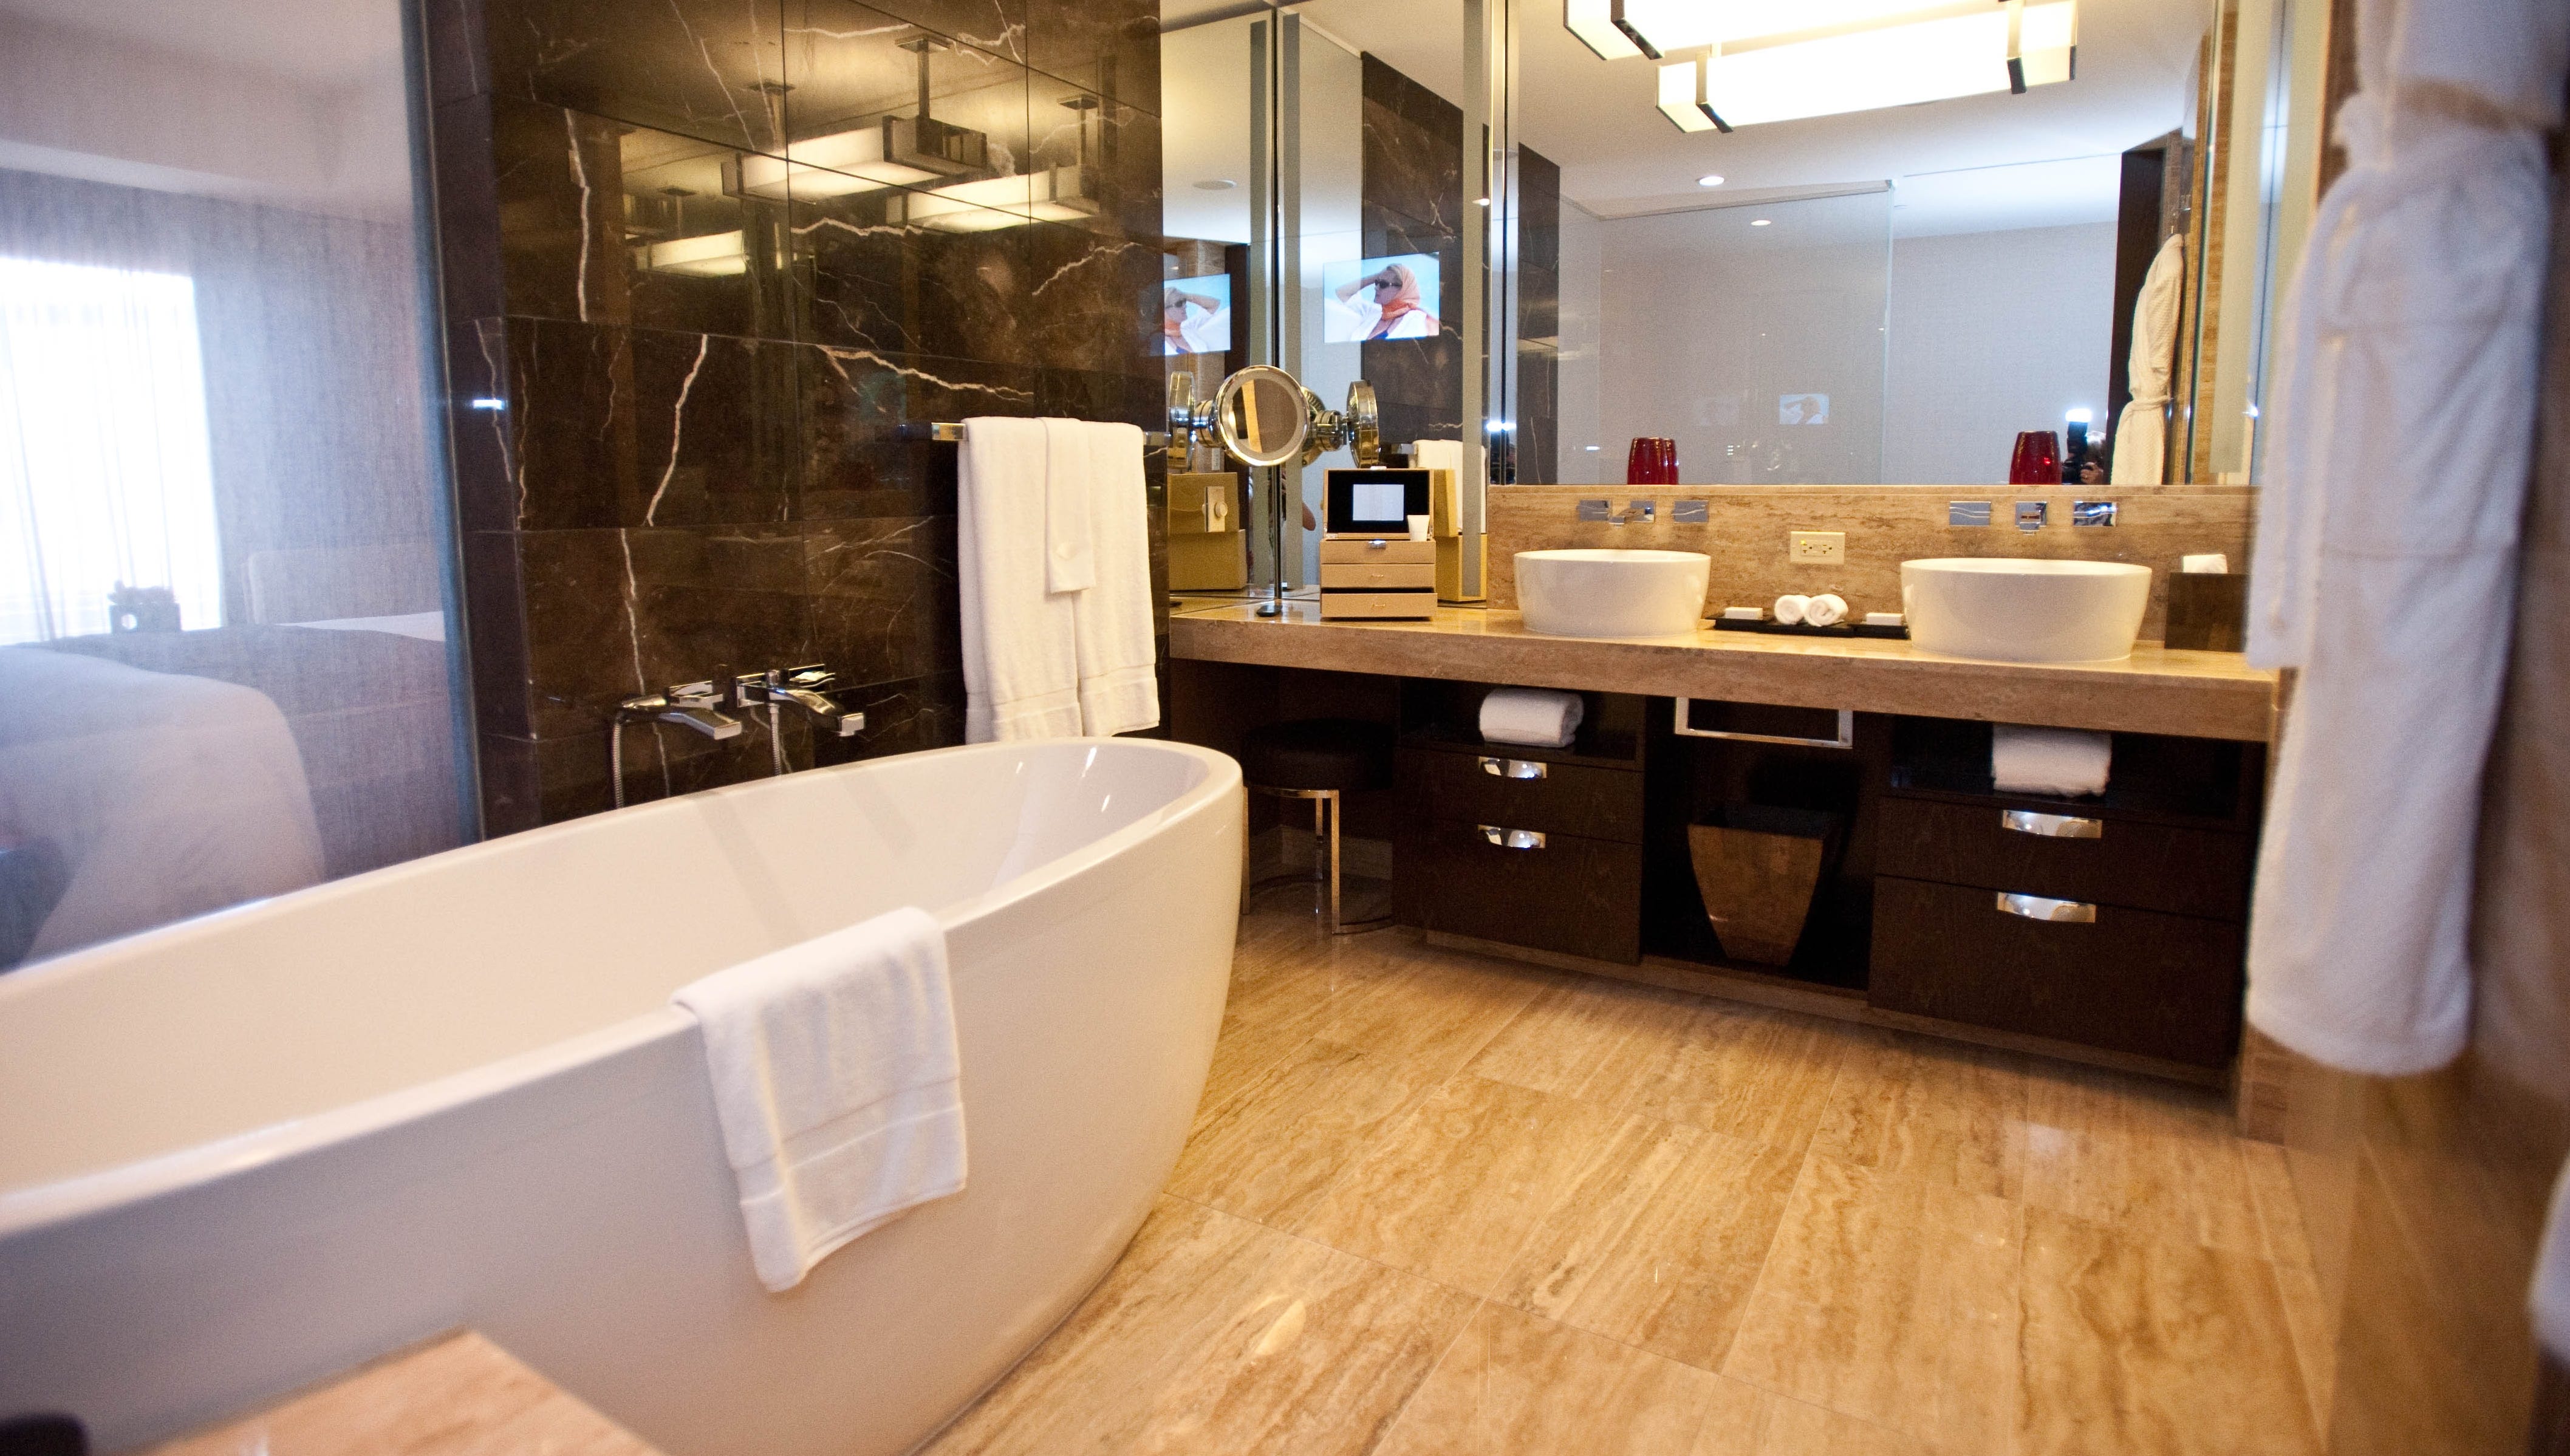 Best Hotel Bathrooms In Las Vegas, Hotels In Vegas With Big Bathtubs